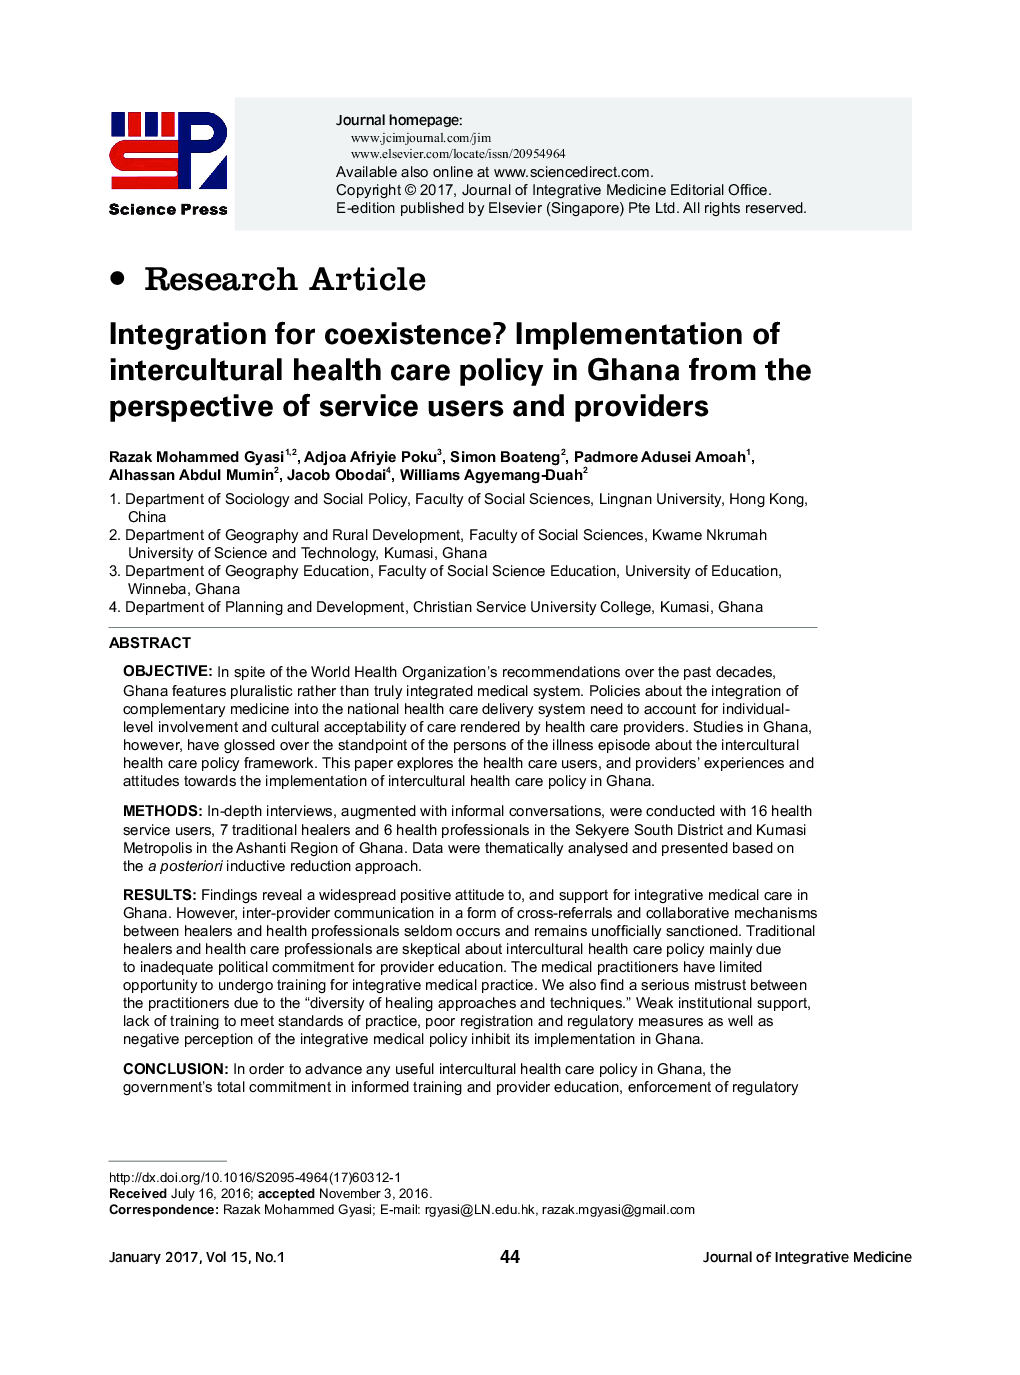 ادغام برای همزیستی؟ پیاده سازی سیاست های مراقبت های بهداشتی بین فرهنگی در غنا از منظر کاربران و ارائه دهندگان خدمات 